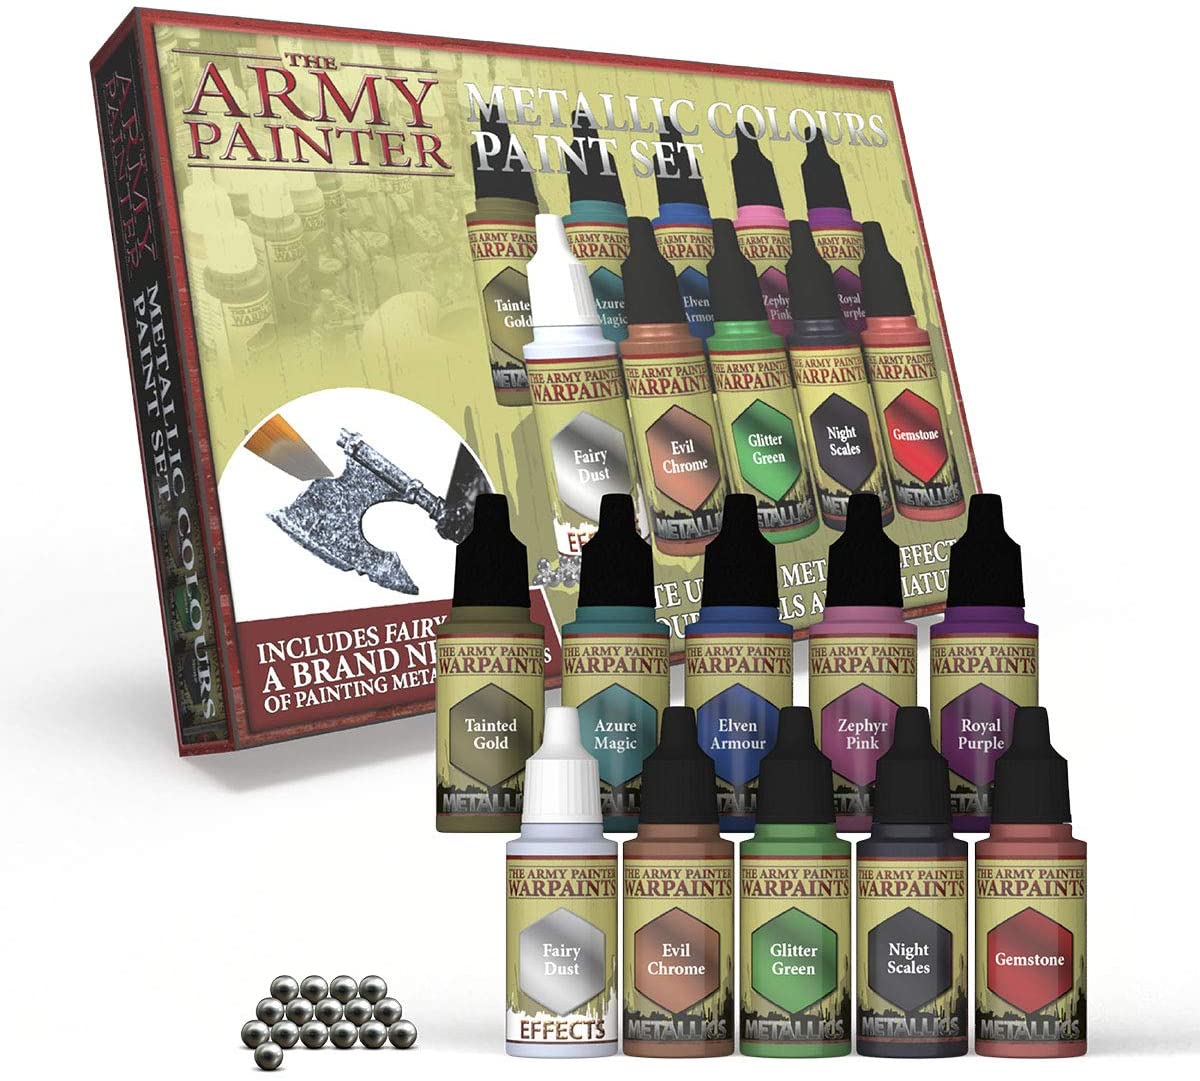 Army Painter: Metallic Colours Paint Set | CCGPrime